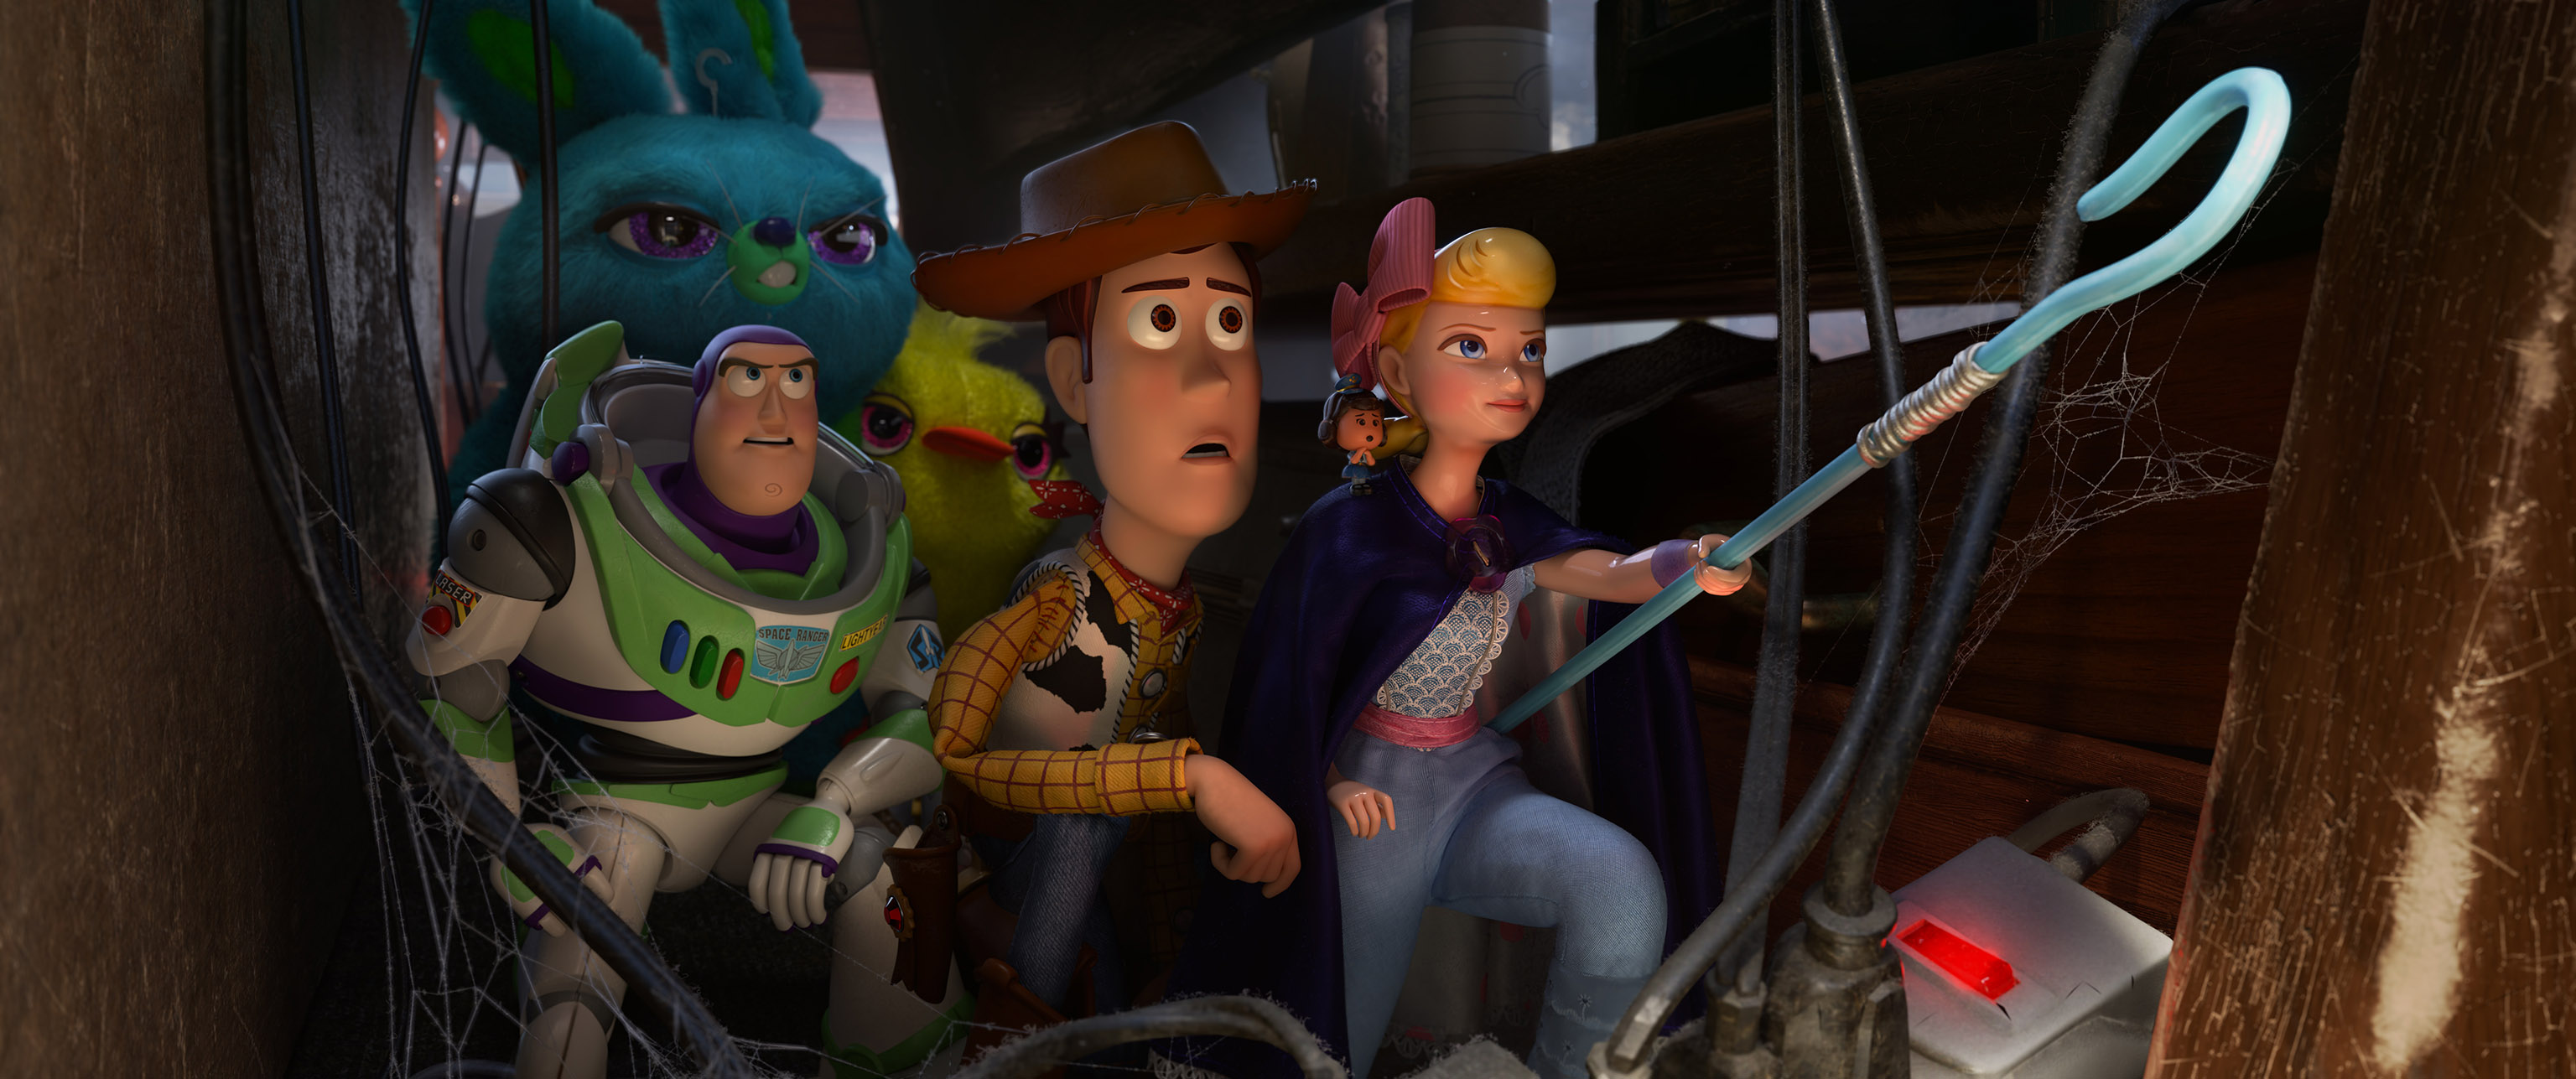 Toy Story ya no es solo para niños